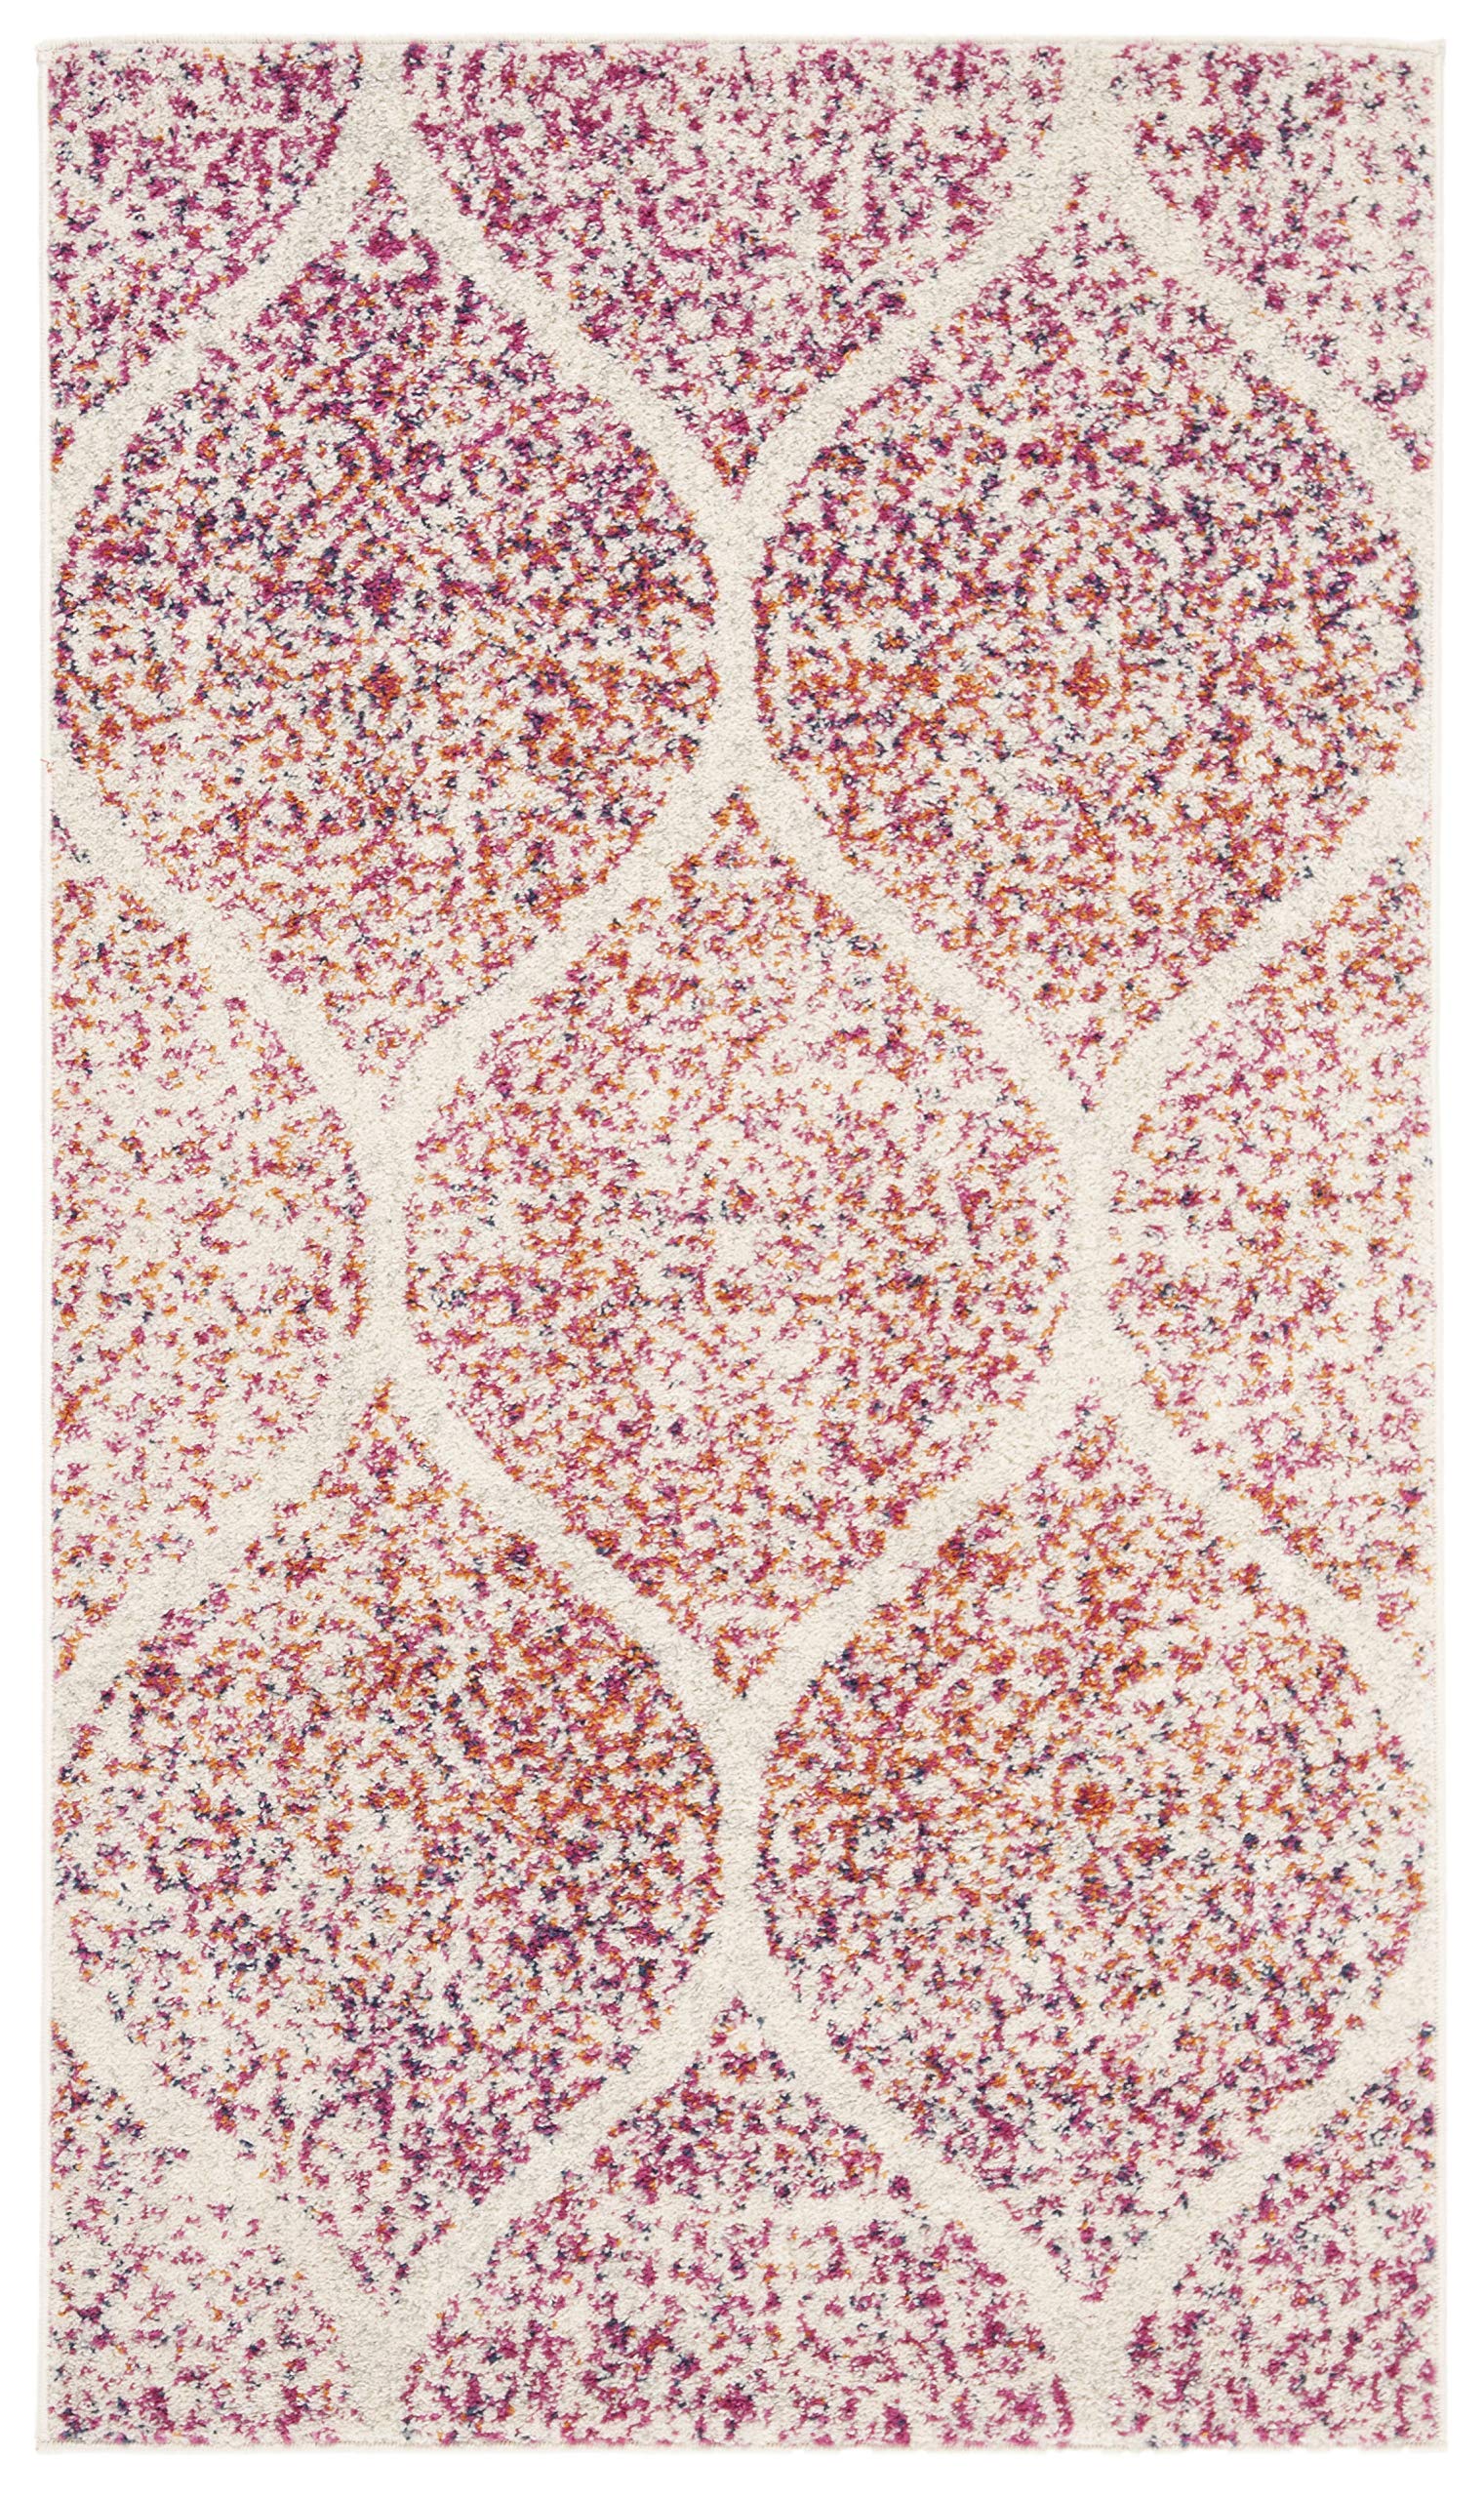 Safavieh 麦迪逊系列特色地毯 - 2'3'' x 4'，奶油色和紫红色，华丽格子仿旧设计，不脱落且易于...